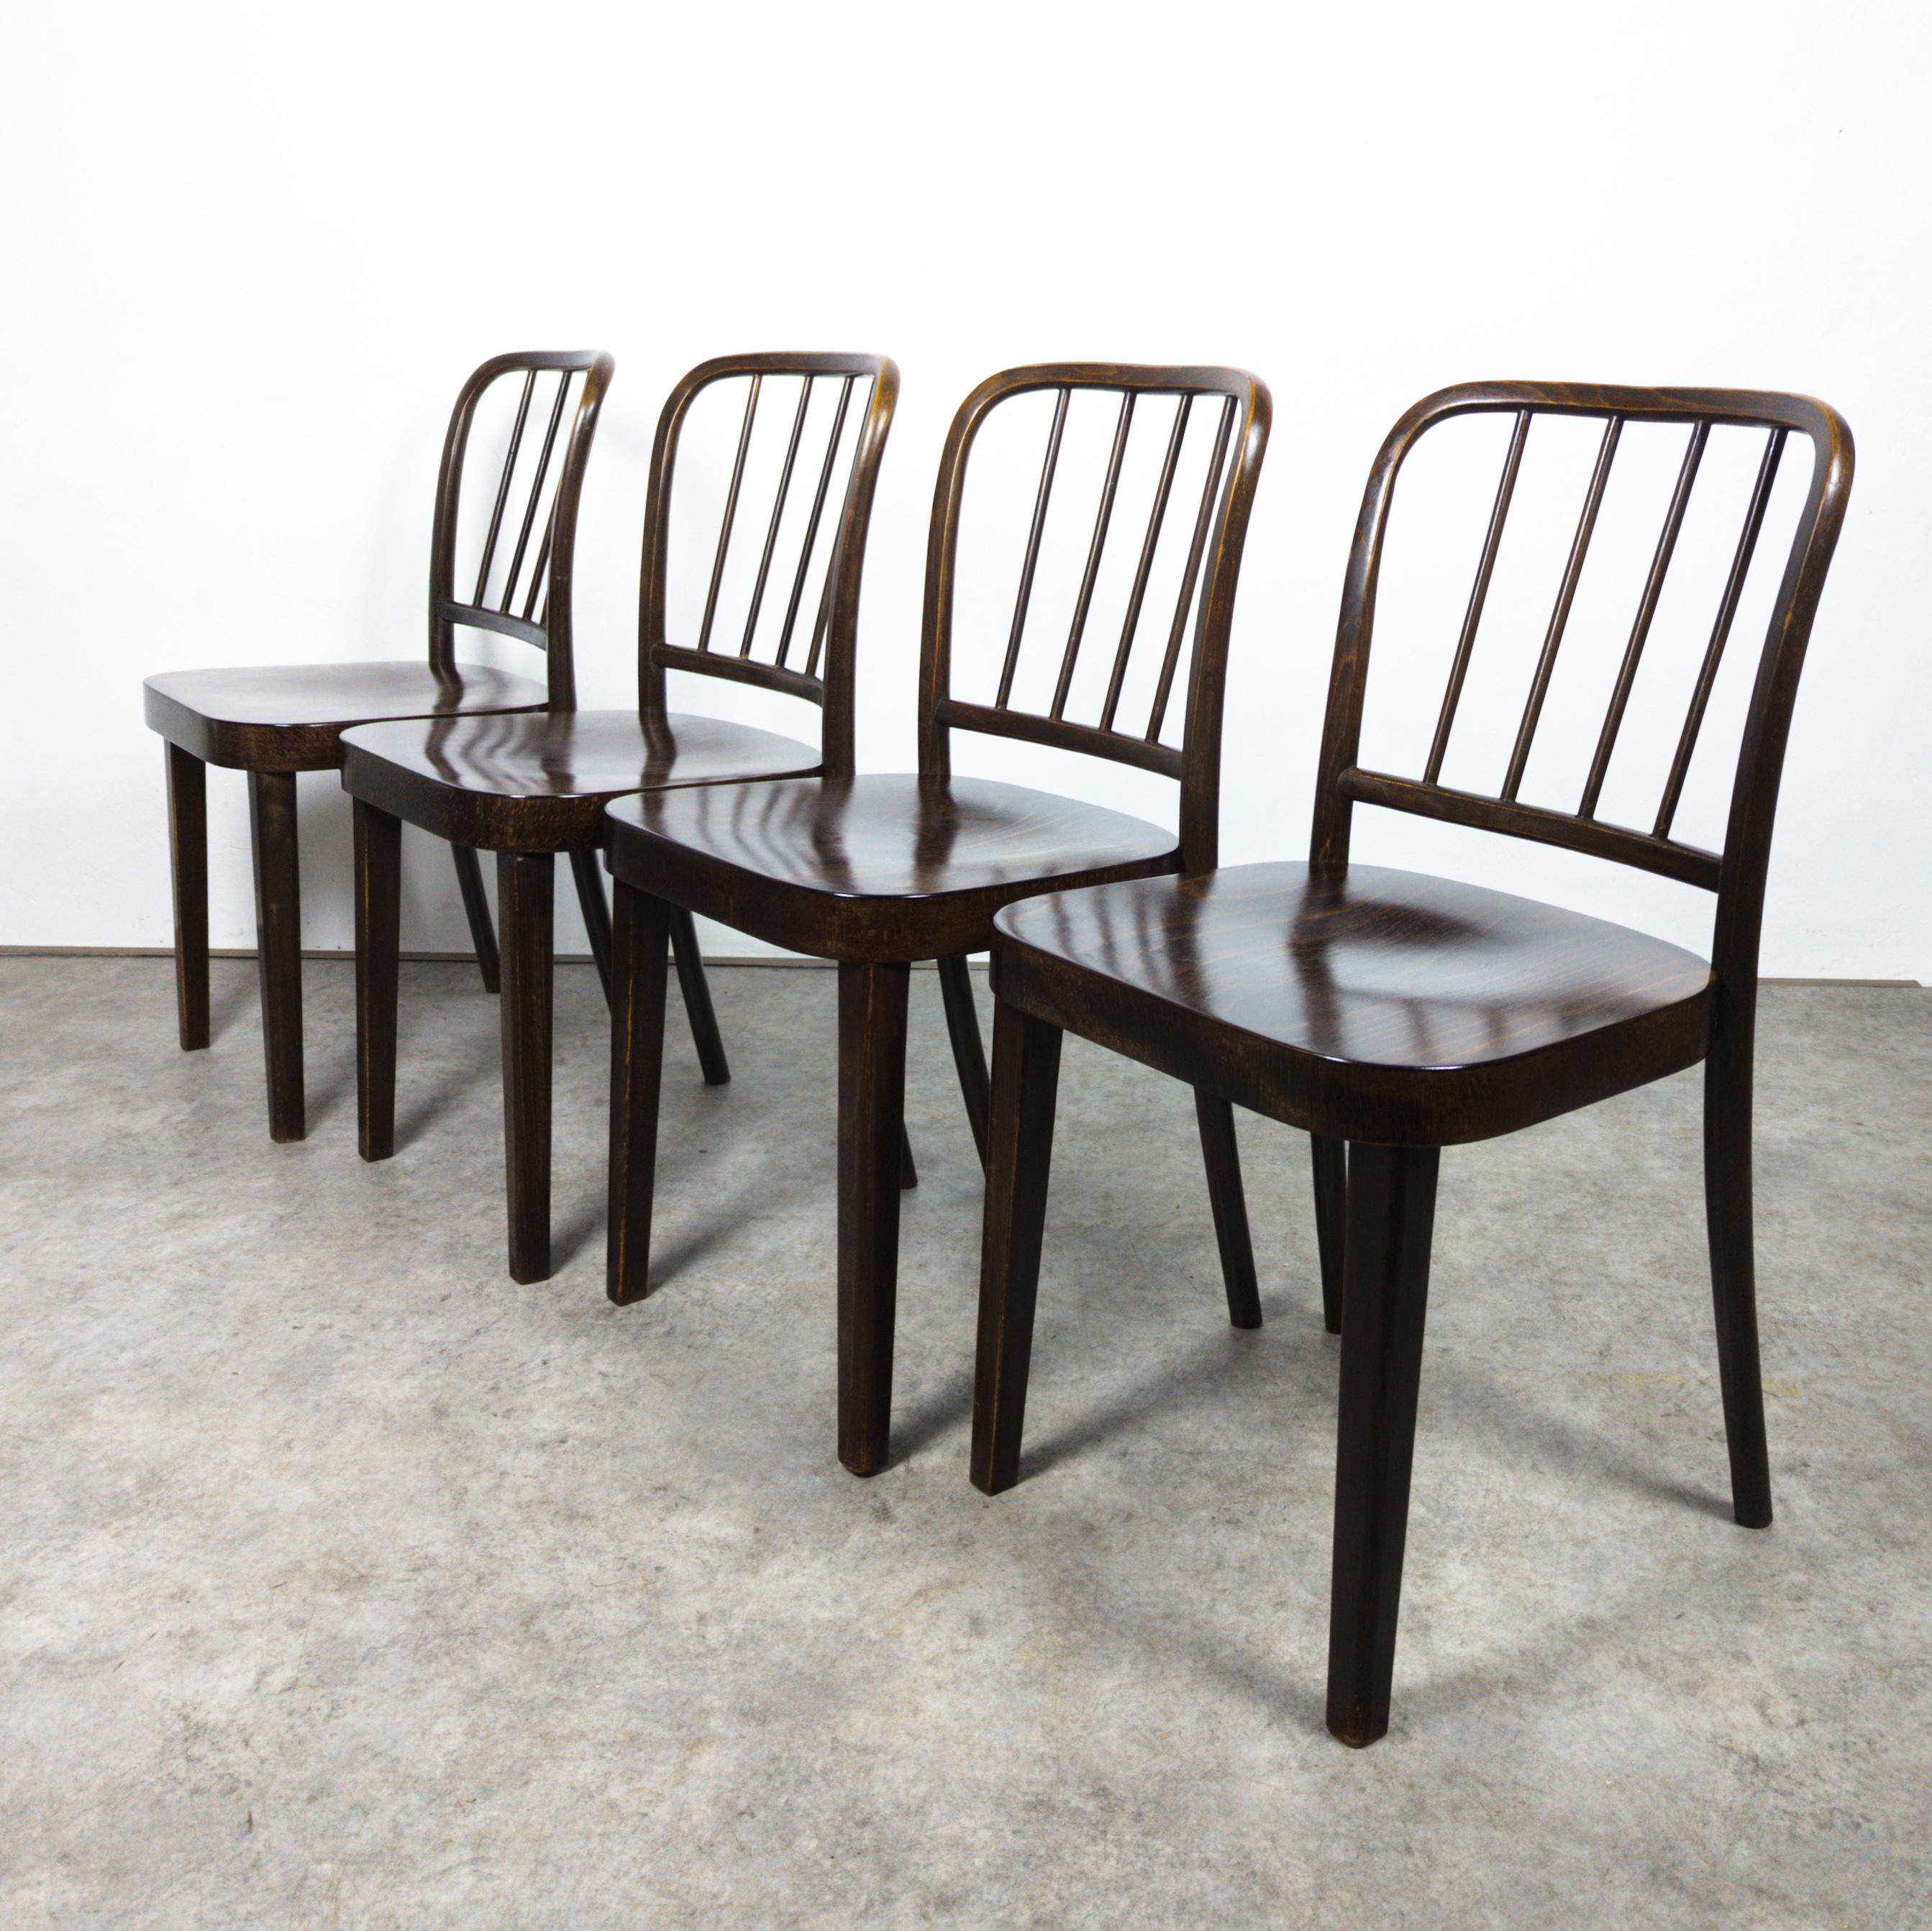 Ensemble de quatre très rares chaises Josef Hoffmann de 1932, version A 811/4, en bois de hêtre laqué. Les chaises conservent leur charme d'origine avec une délicieuse patine, les quatre sièges ayant été remis à neuf par des experts.